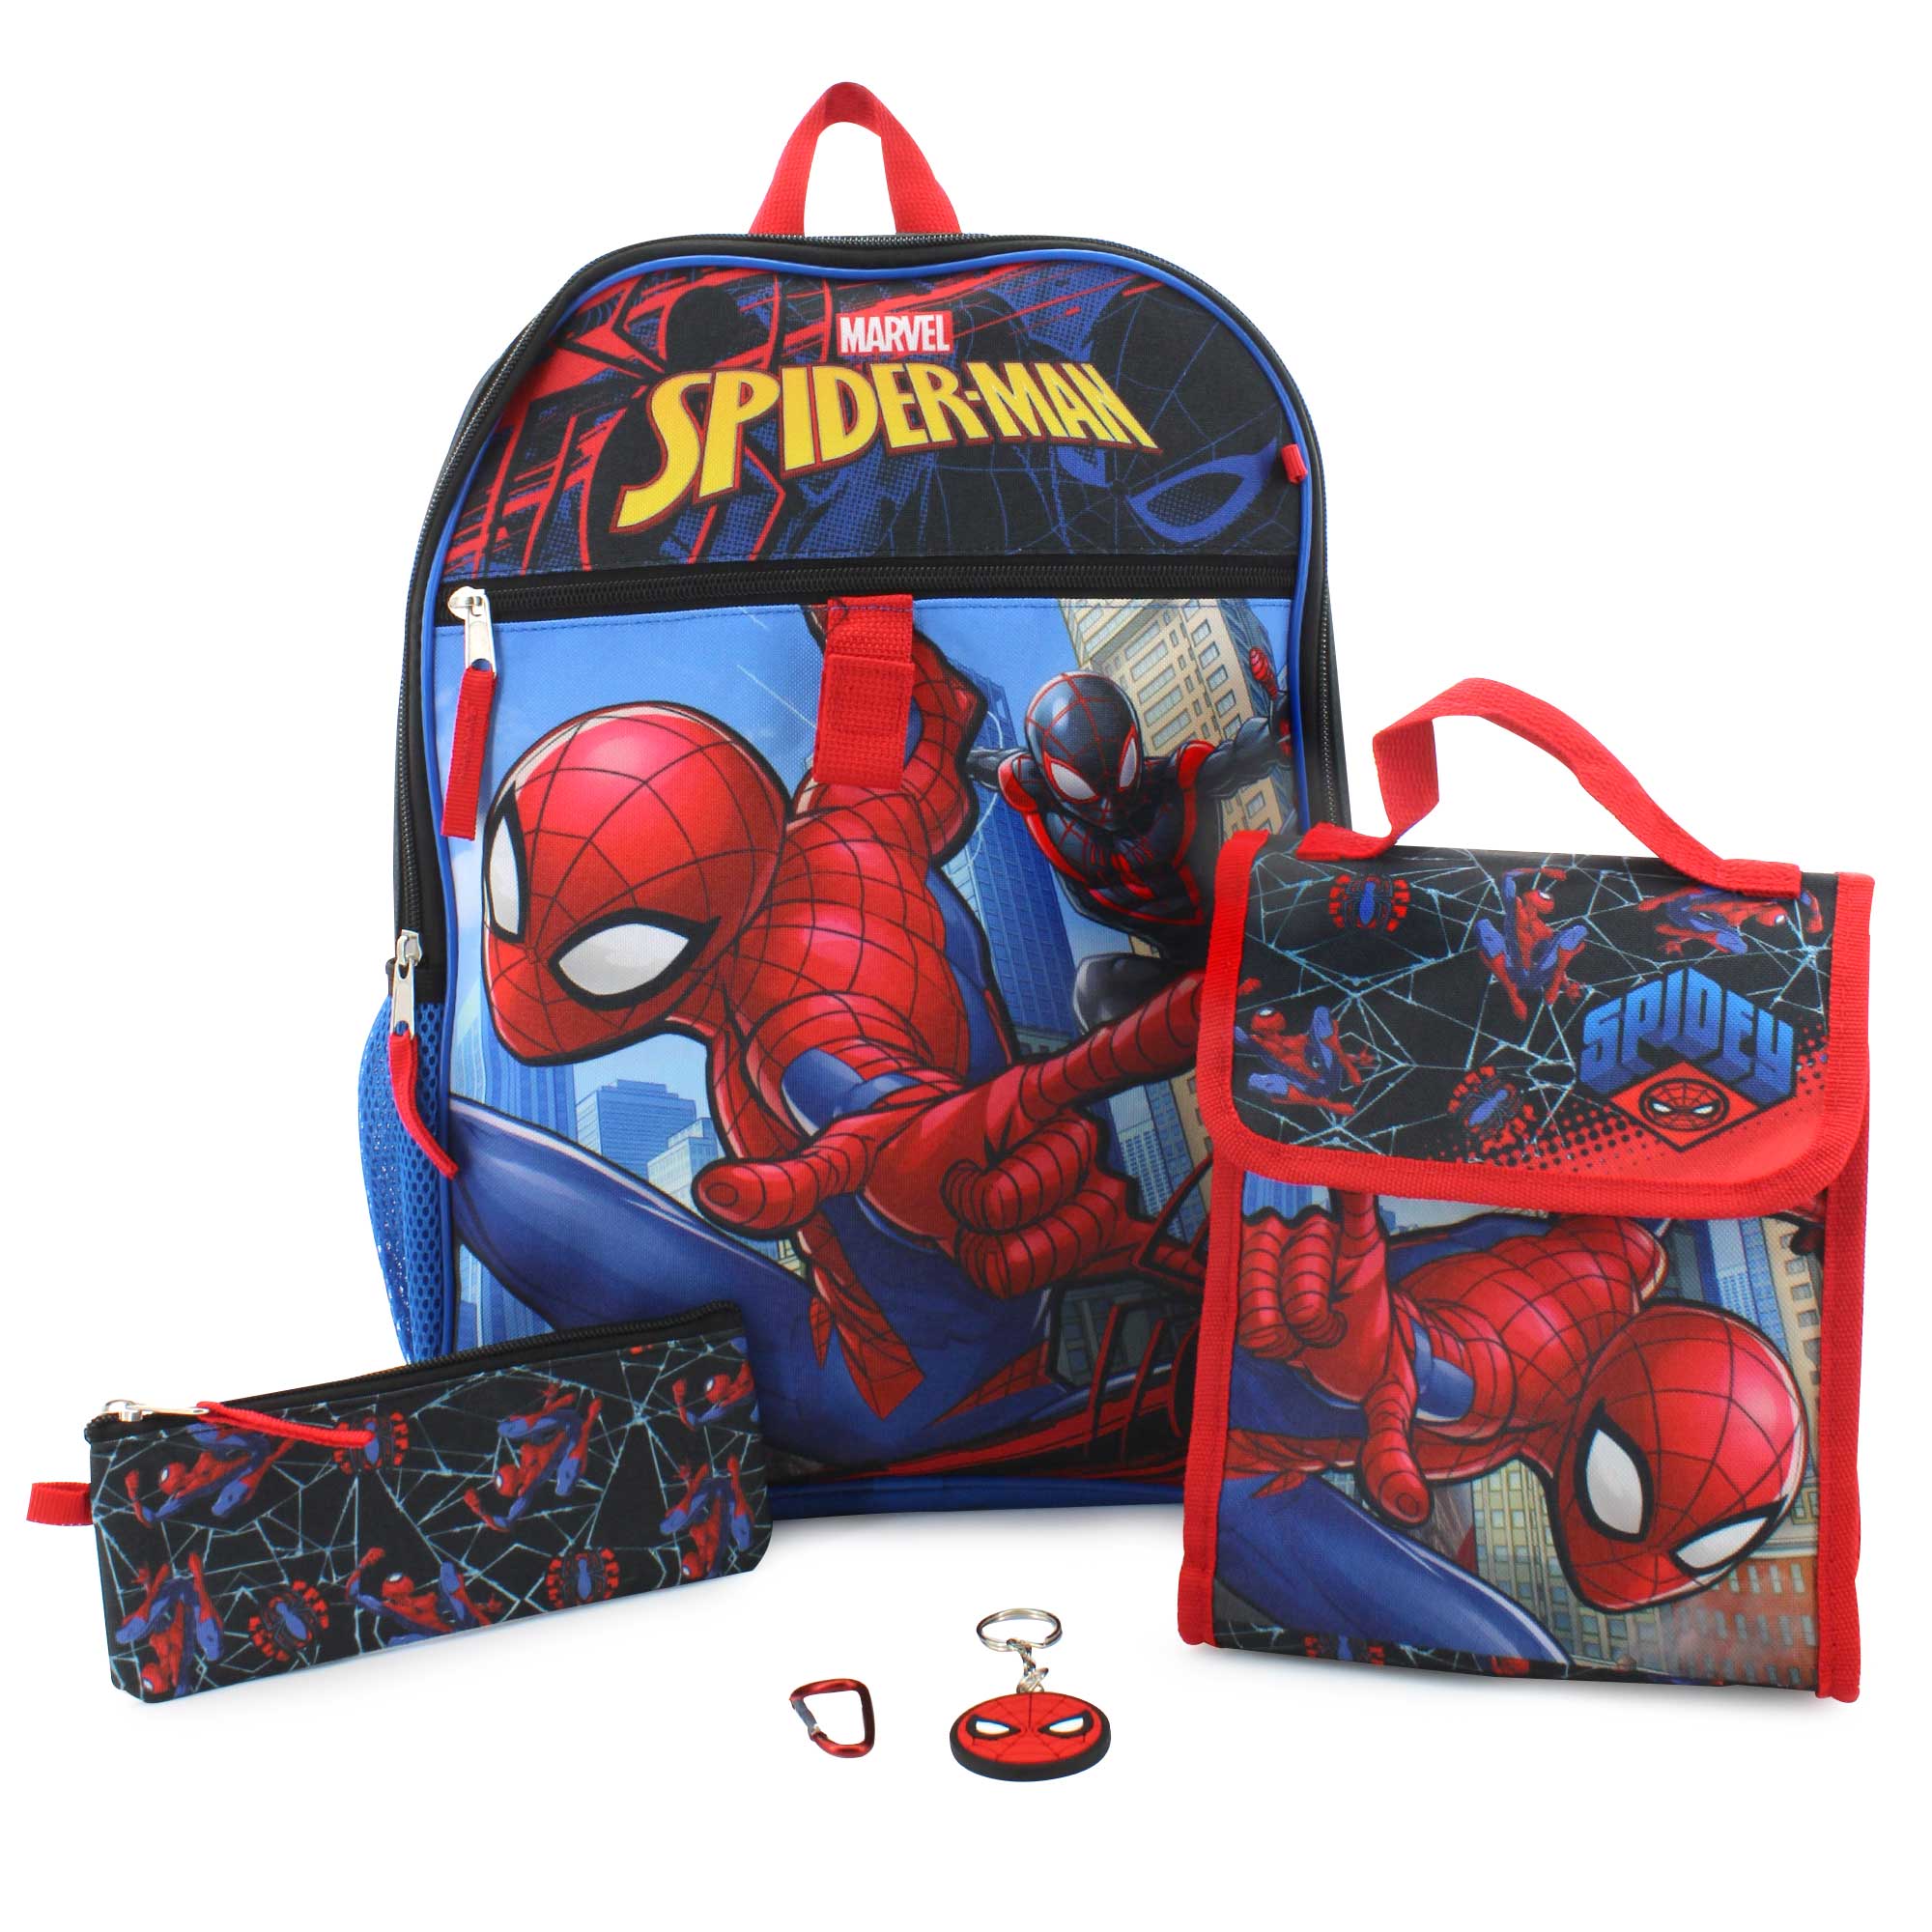 Spider-Man 5-Piece Backpack Set